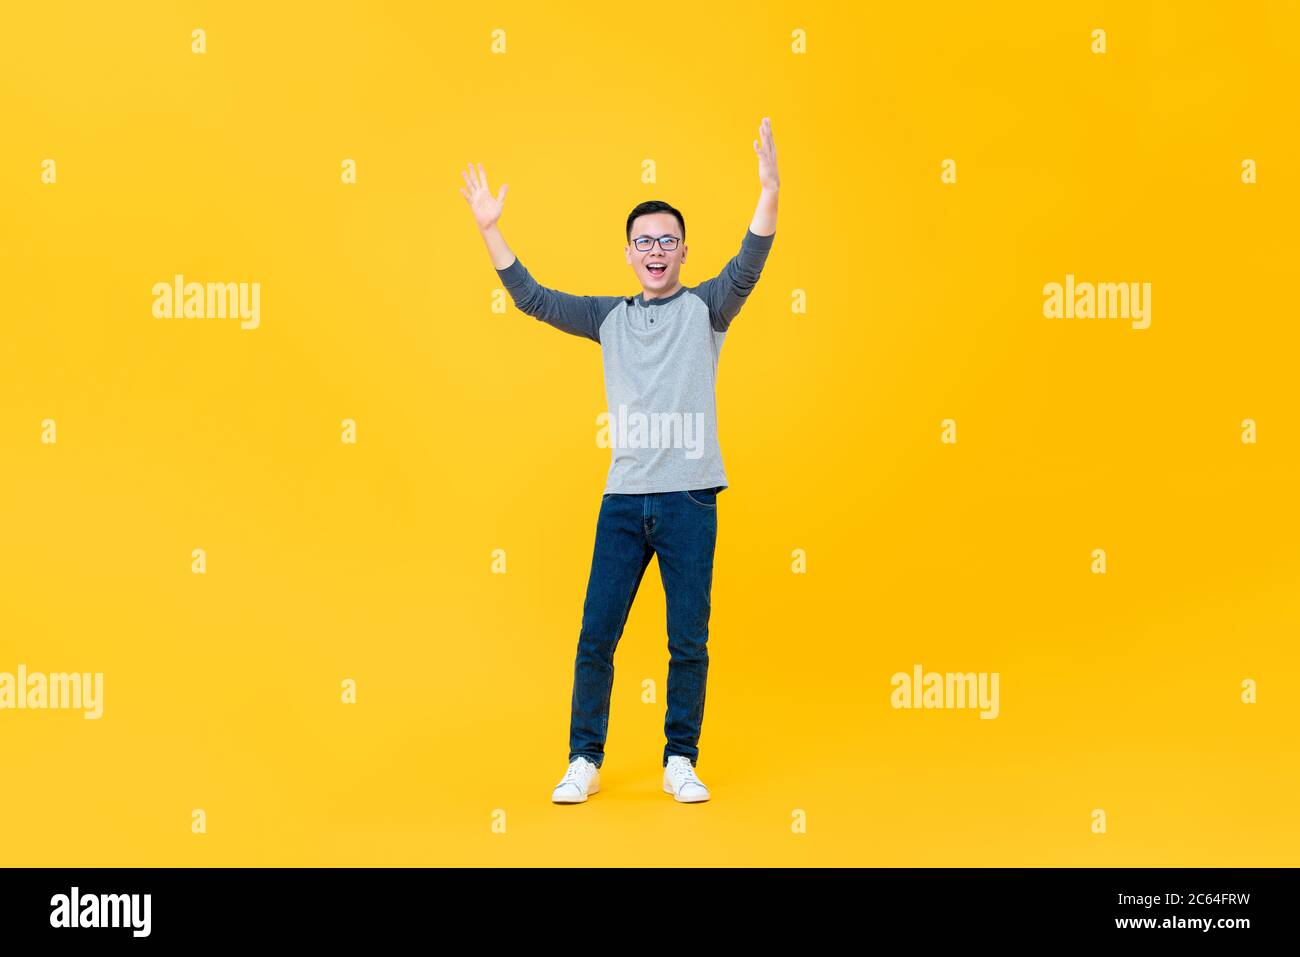 Portrait complet du corps de jeune asiatique gai levant les deux bras dans l'air isolé sur fond jaune Banque D'Images